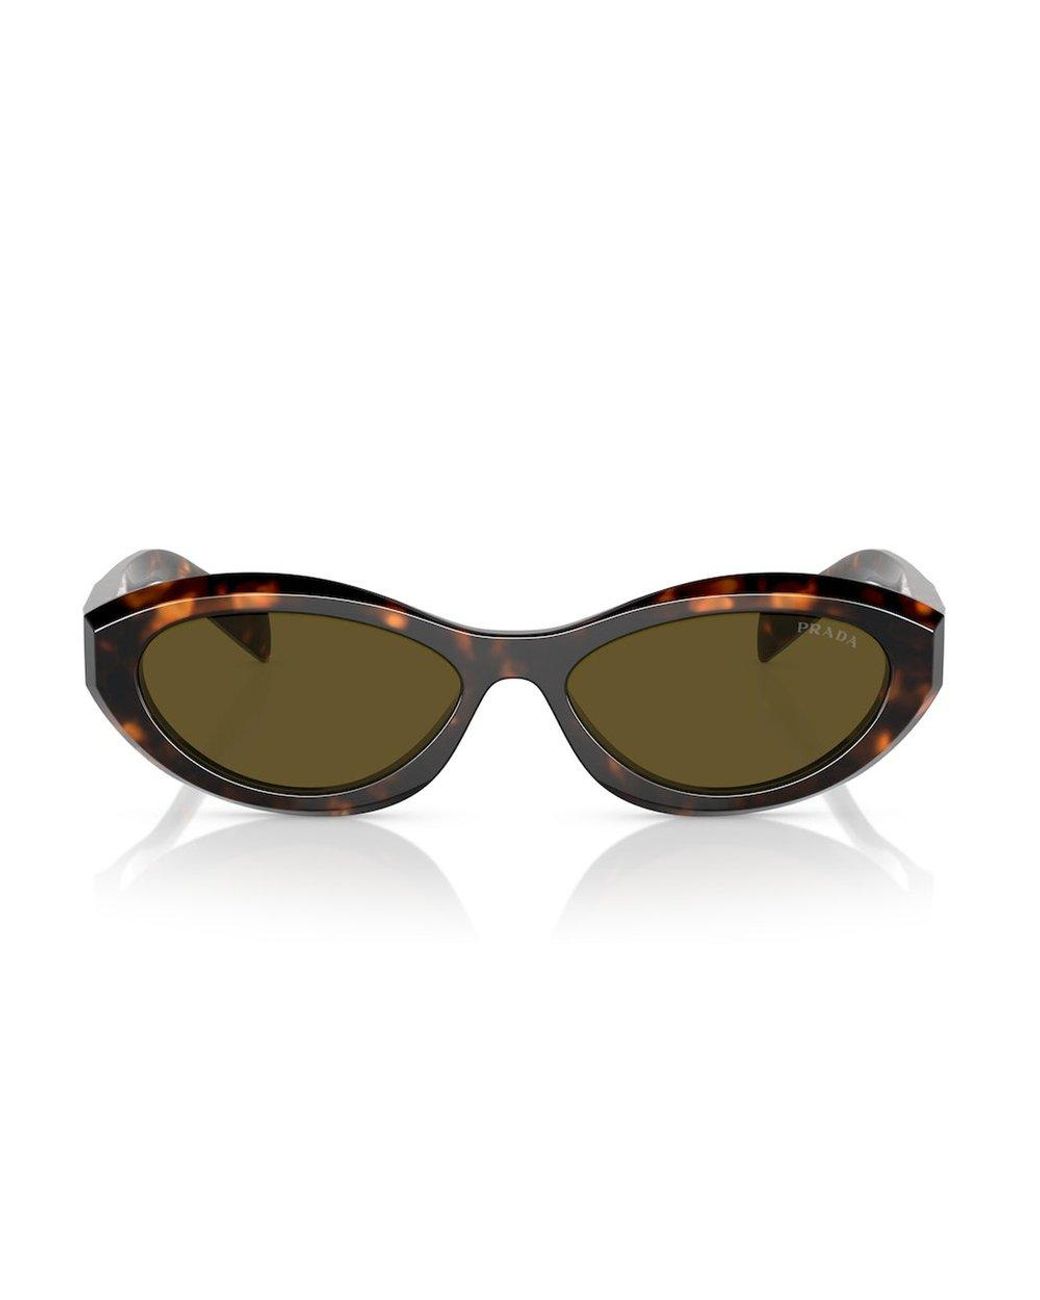 Prada Oval-frame Sunglasses in Brown